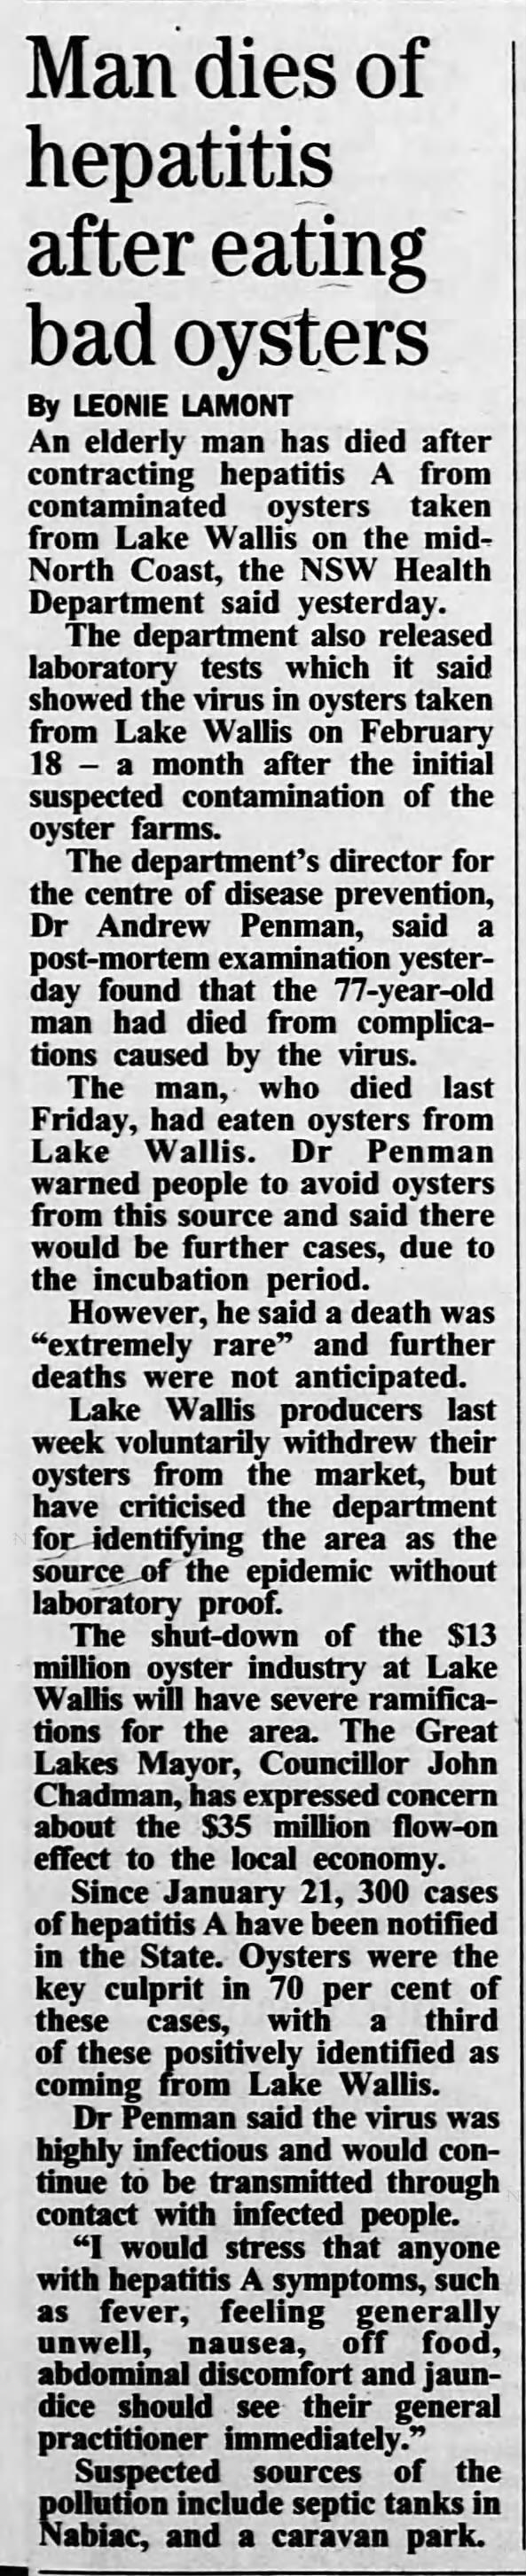 Man dies of hepatitis after eating bad oysters